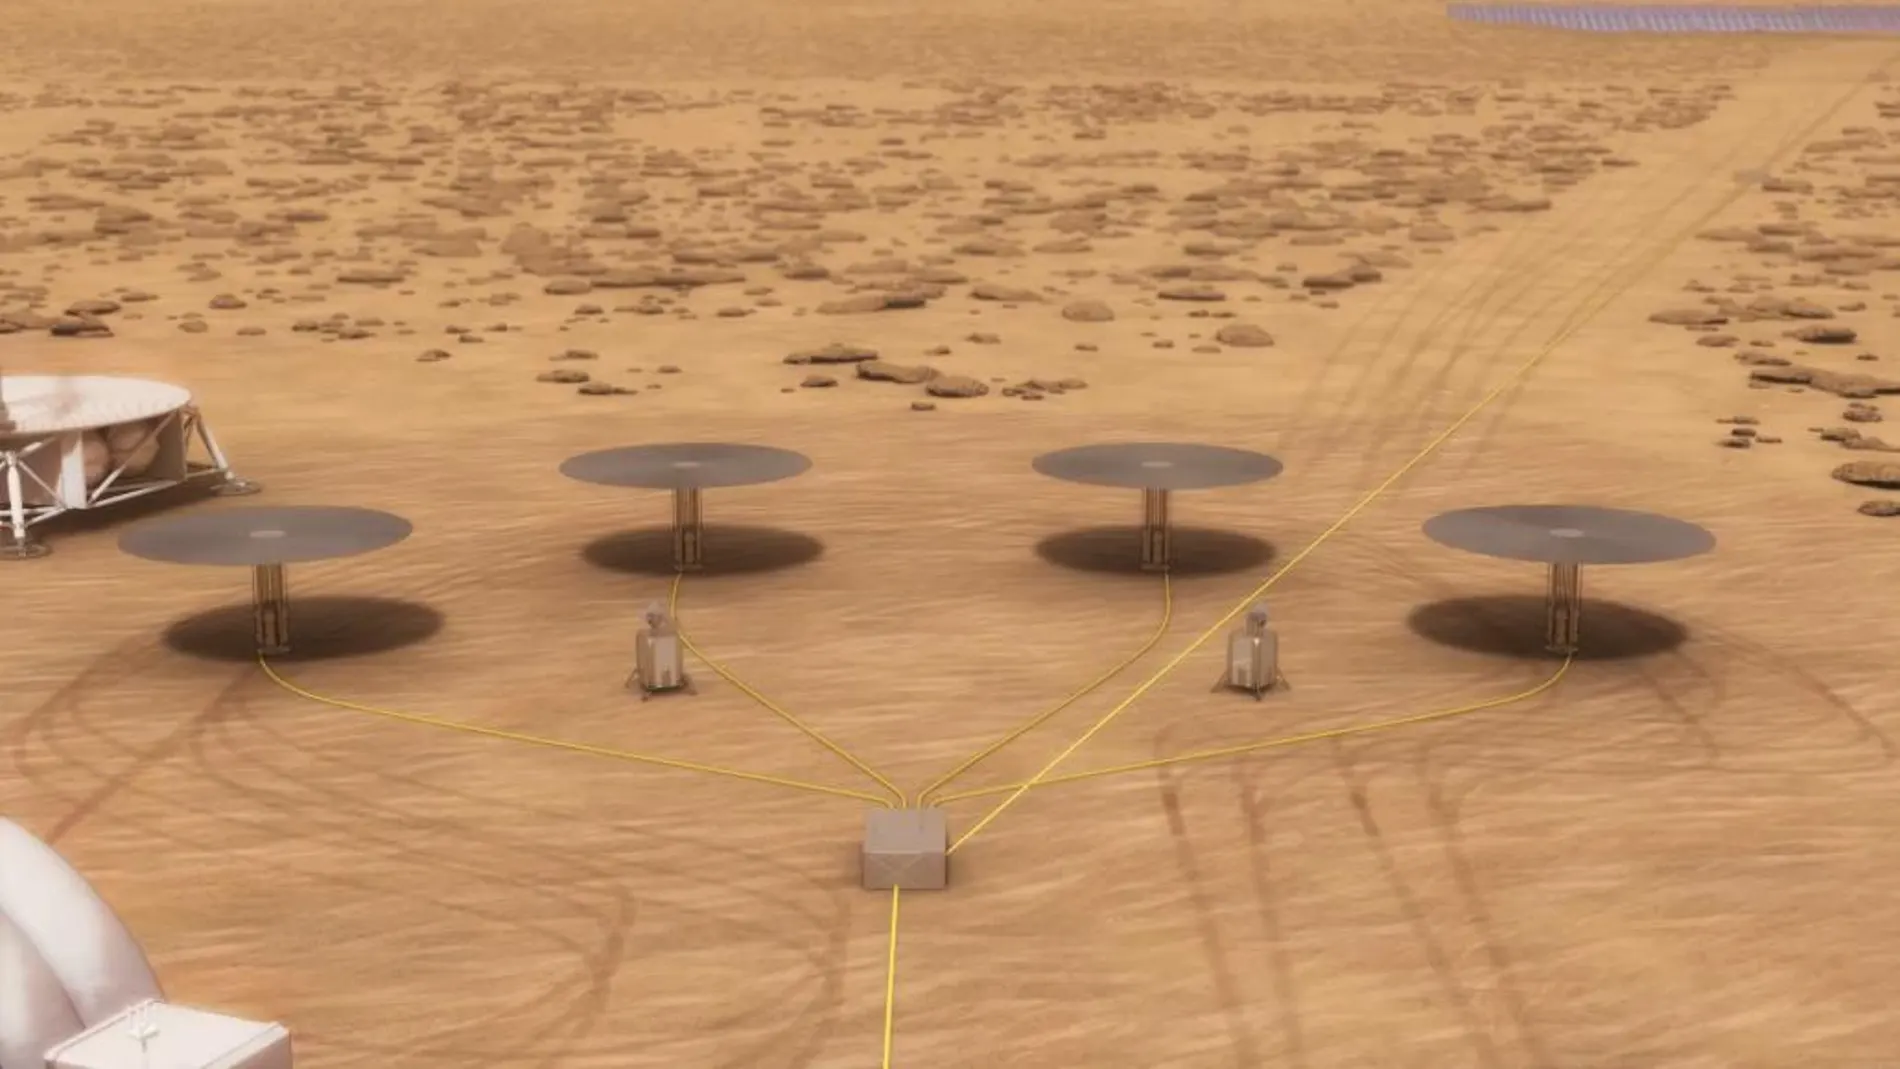 Proyecto de minicentrales en Marte